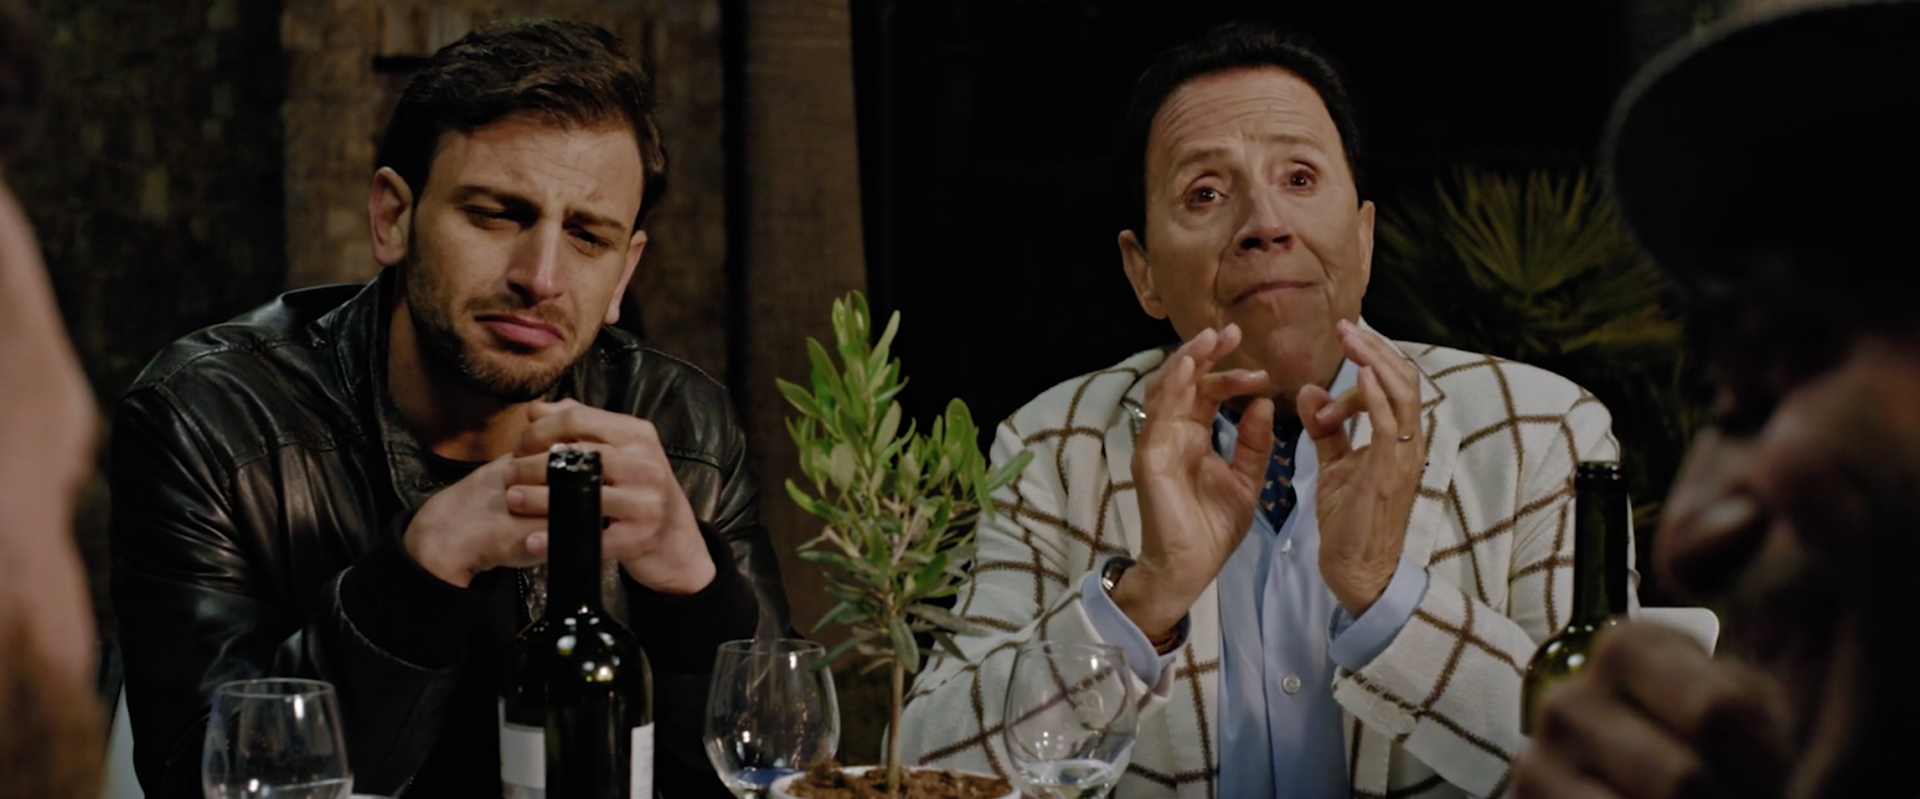 Gino Sorbillo e Marco Infante nel film “Alessandra” di Pasquale Falcone